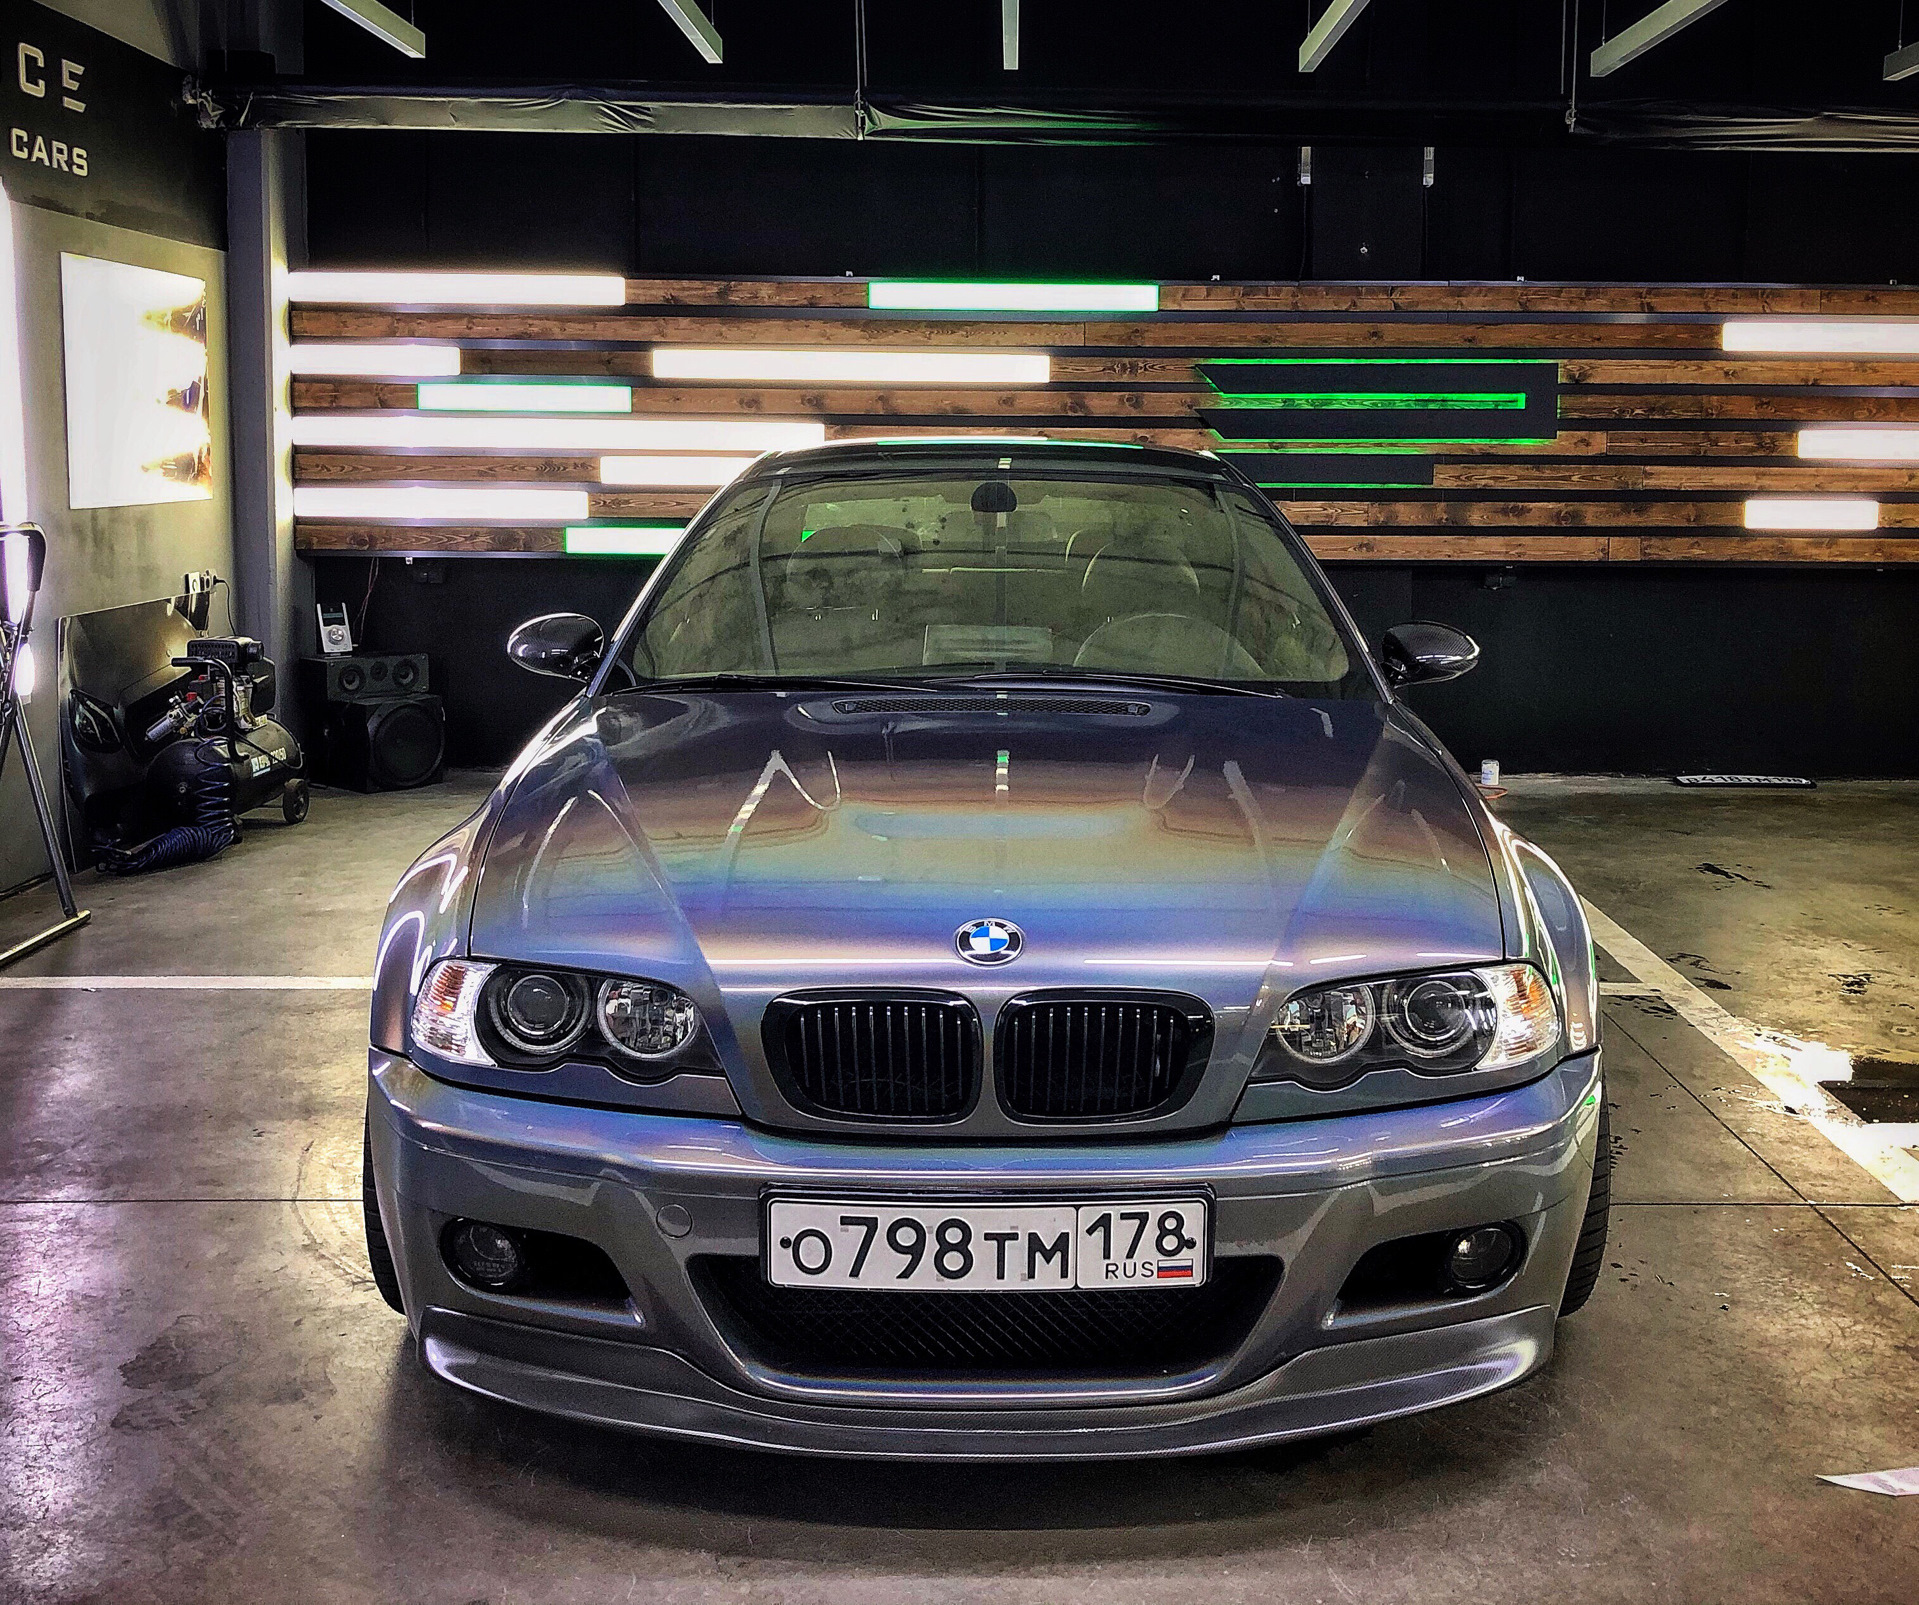 Автомобиль бмв с пробегом. BMW 3 Series (e46). BMW 3 Series e46 Coupe. BMW 3 e46 Performance. Стайлинг BMW 3 e46.